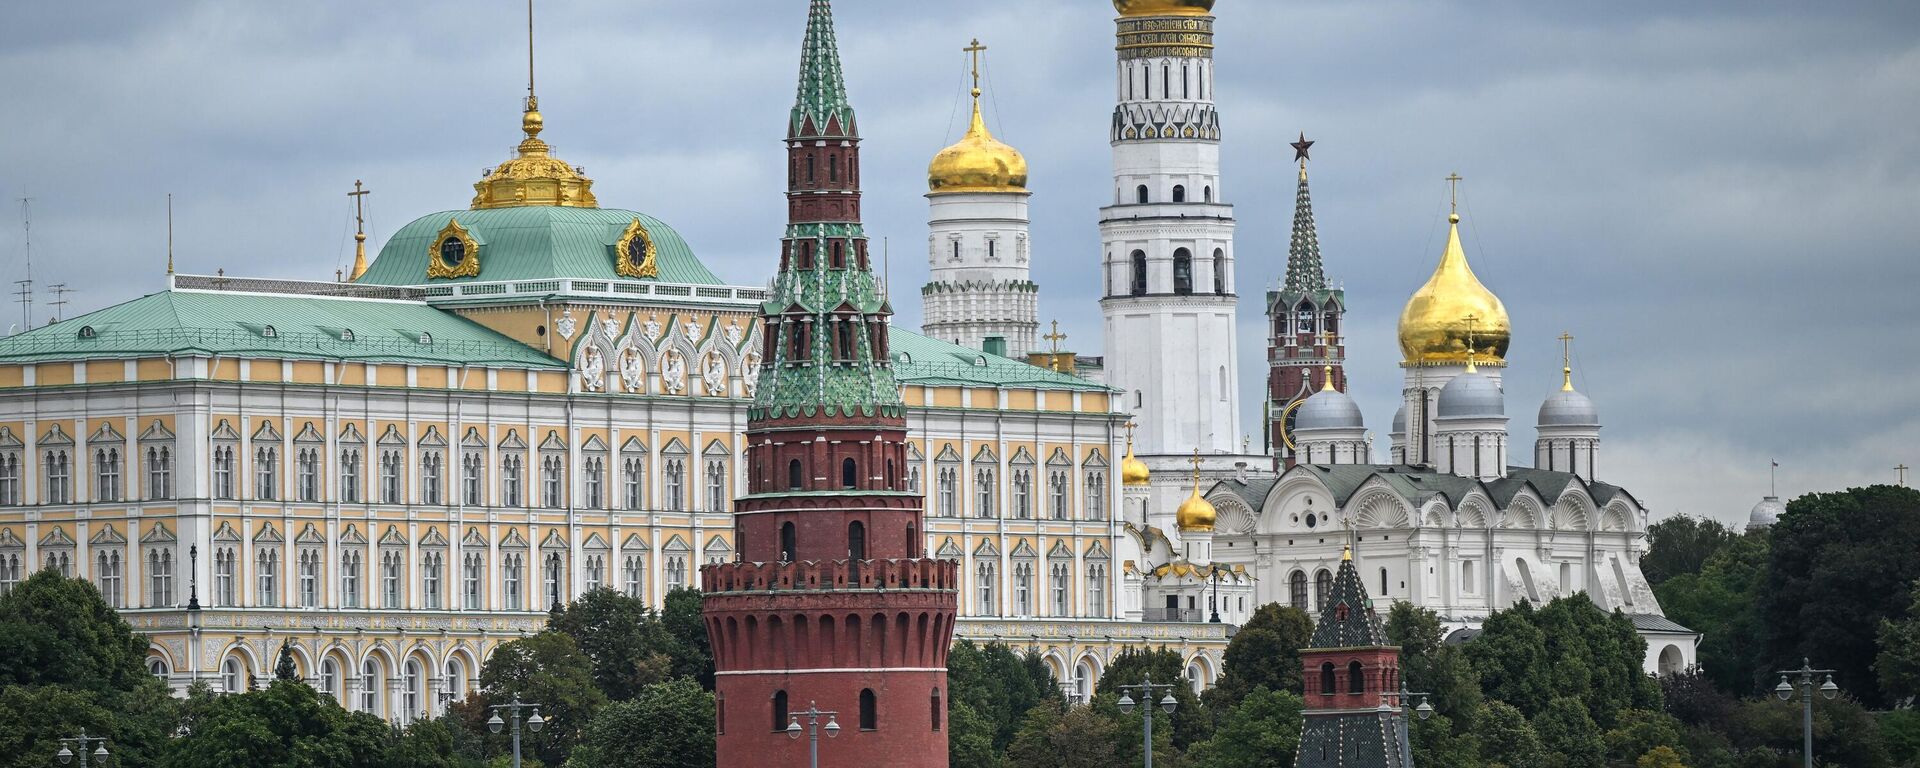 Самое высокое здание кремля